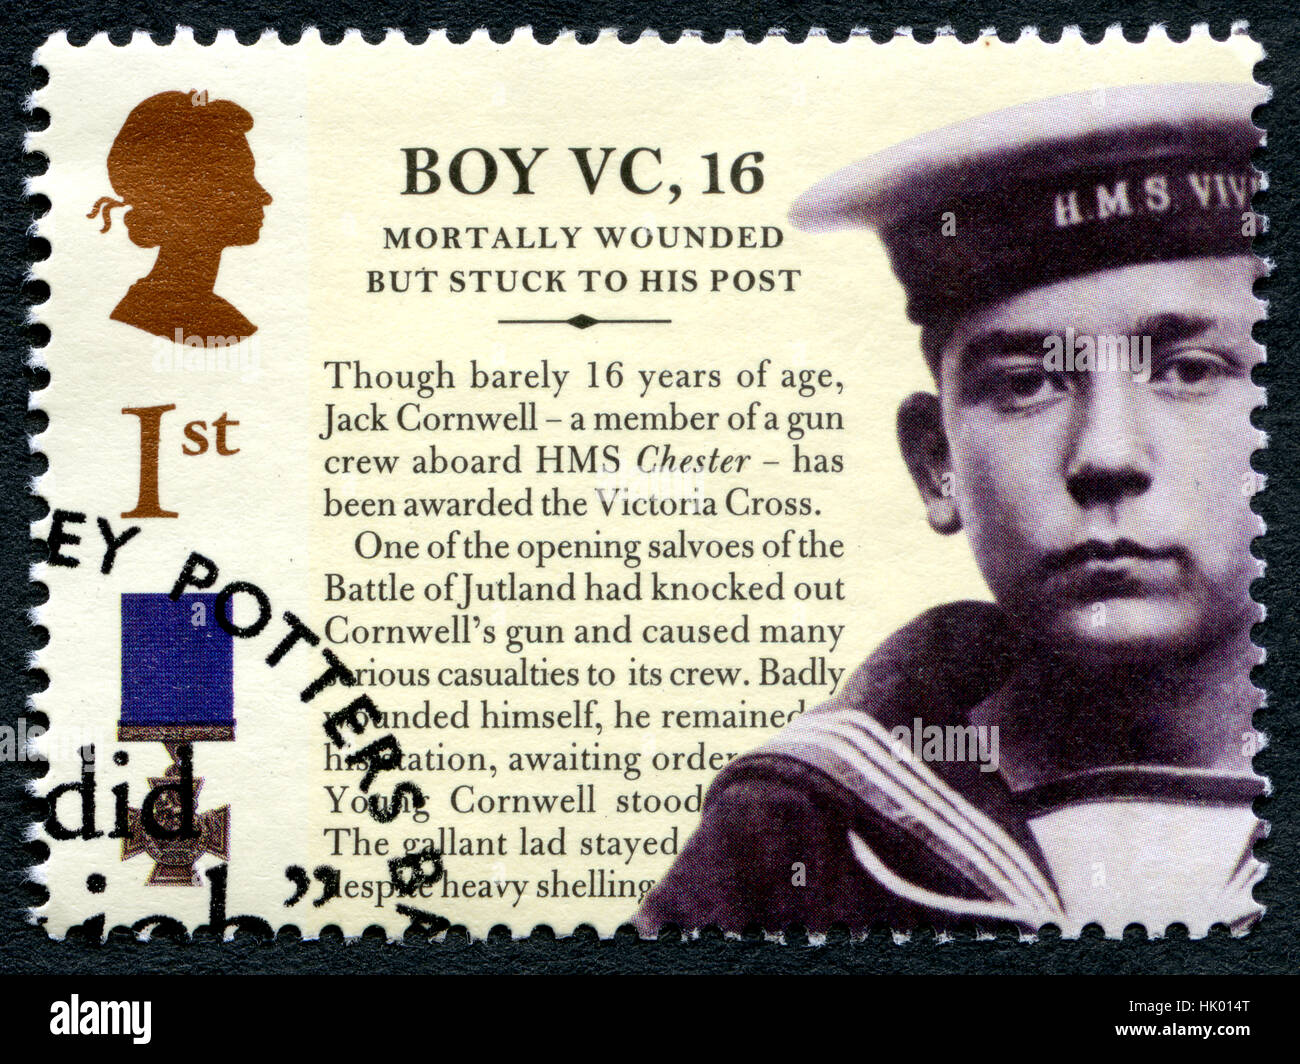 Großbritannien - CIRCA 2006: Eine gebrauchte Briefmarke aus dem Vereinigten Königreich, ein Bild von Jack Cornwell das Victoria-Kreuz für Tapferkeit Dur verliehen wurde Stockfoto